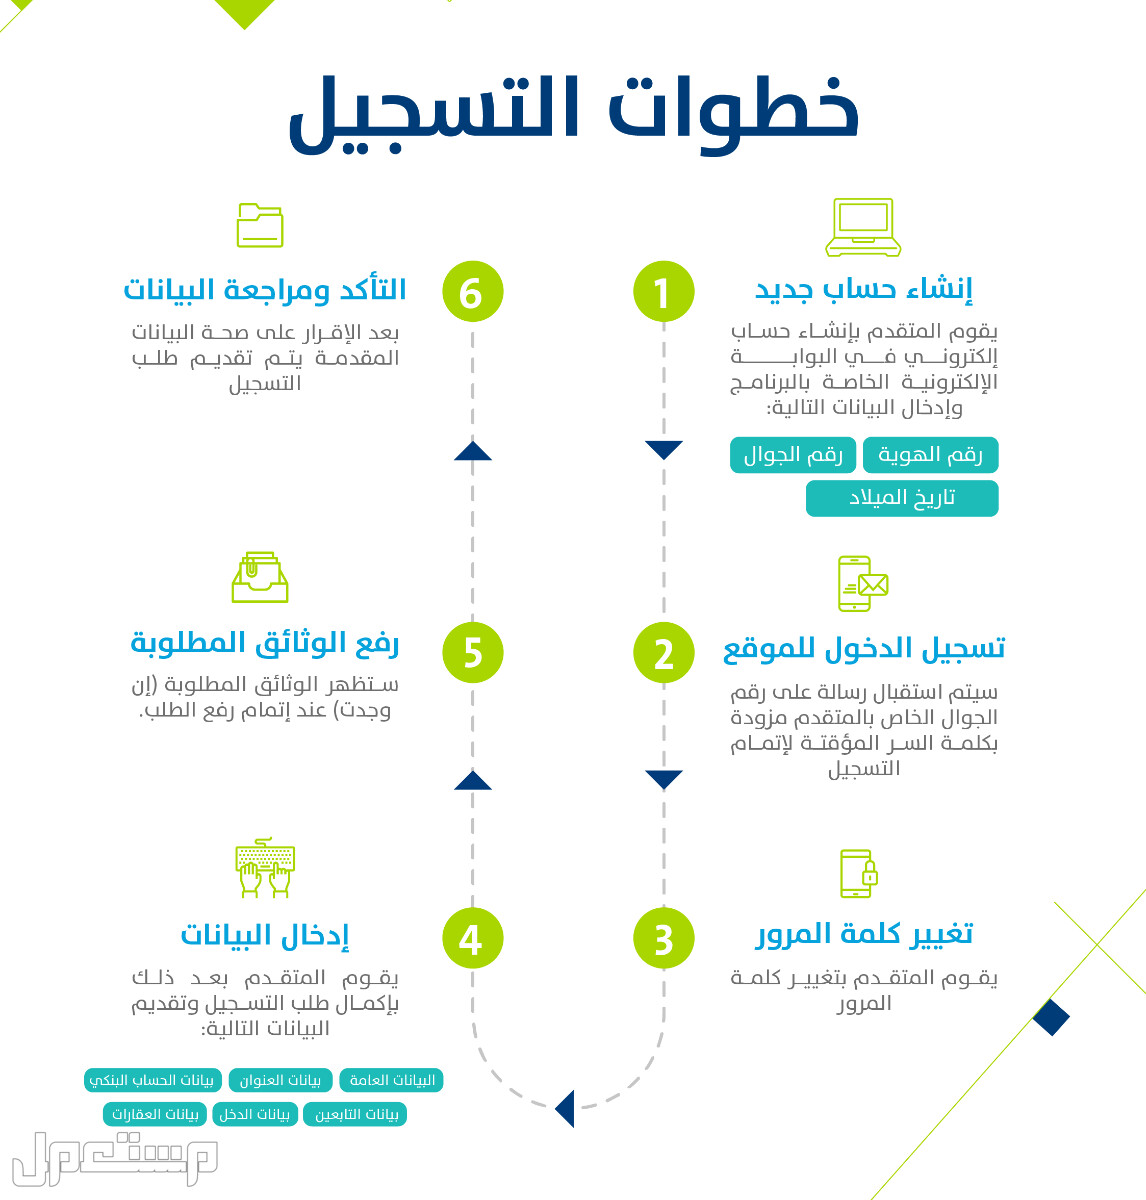 حساب المواطن: تعرف على حقيقة تأثير وثيقة العمل الحر على الدعم في عمان